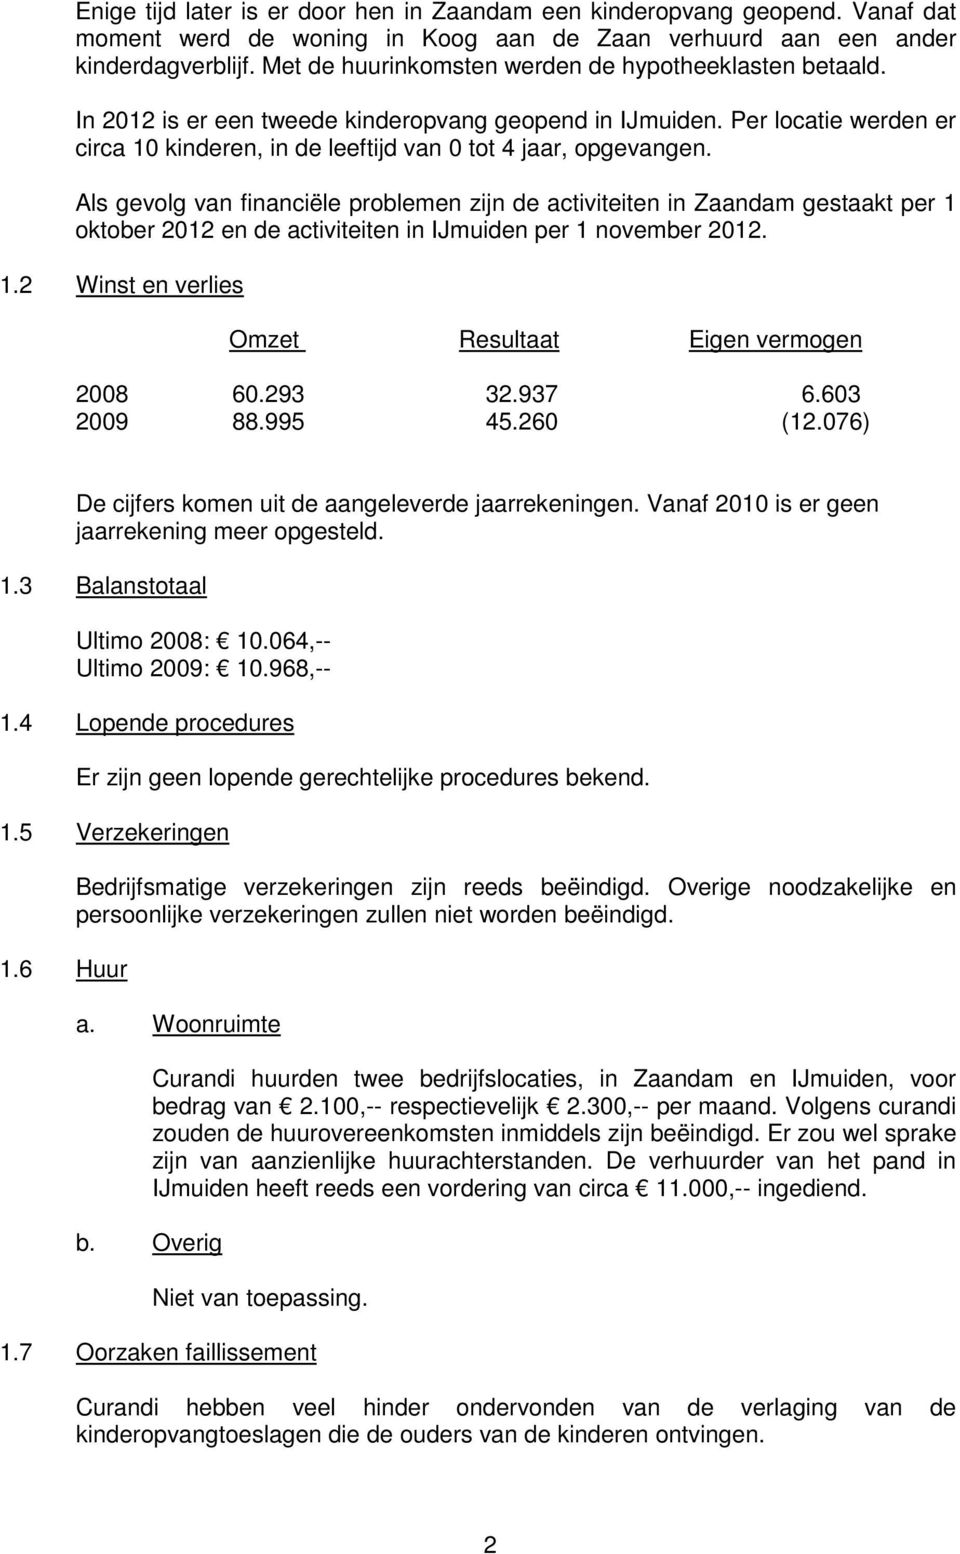 Als gevolg van financiële problemen zijn de activiteiten in Zaandam gestaakt per 1 oktober 2012 en de activiteiten in IJmuiden per 1 november 2012. 1.2 Winst en verlies Omzet Resultaat Eigen vermogen 2008 60.